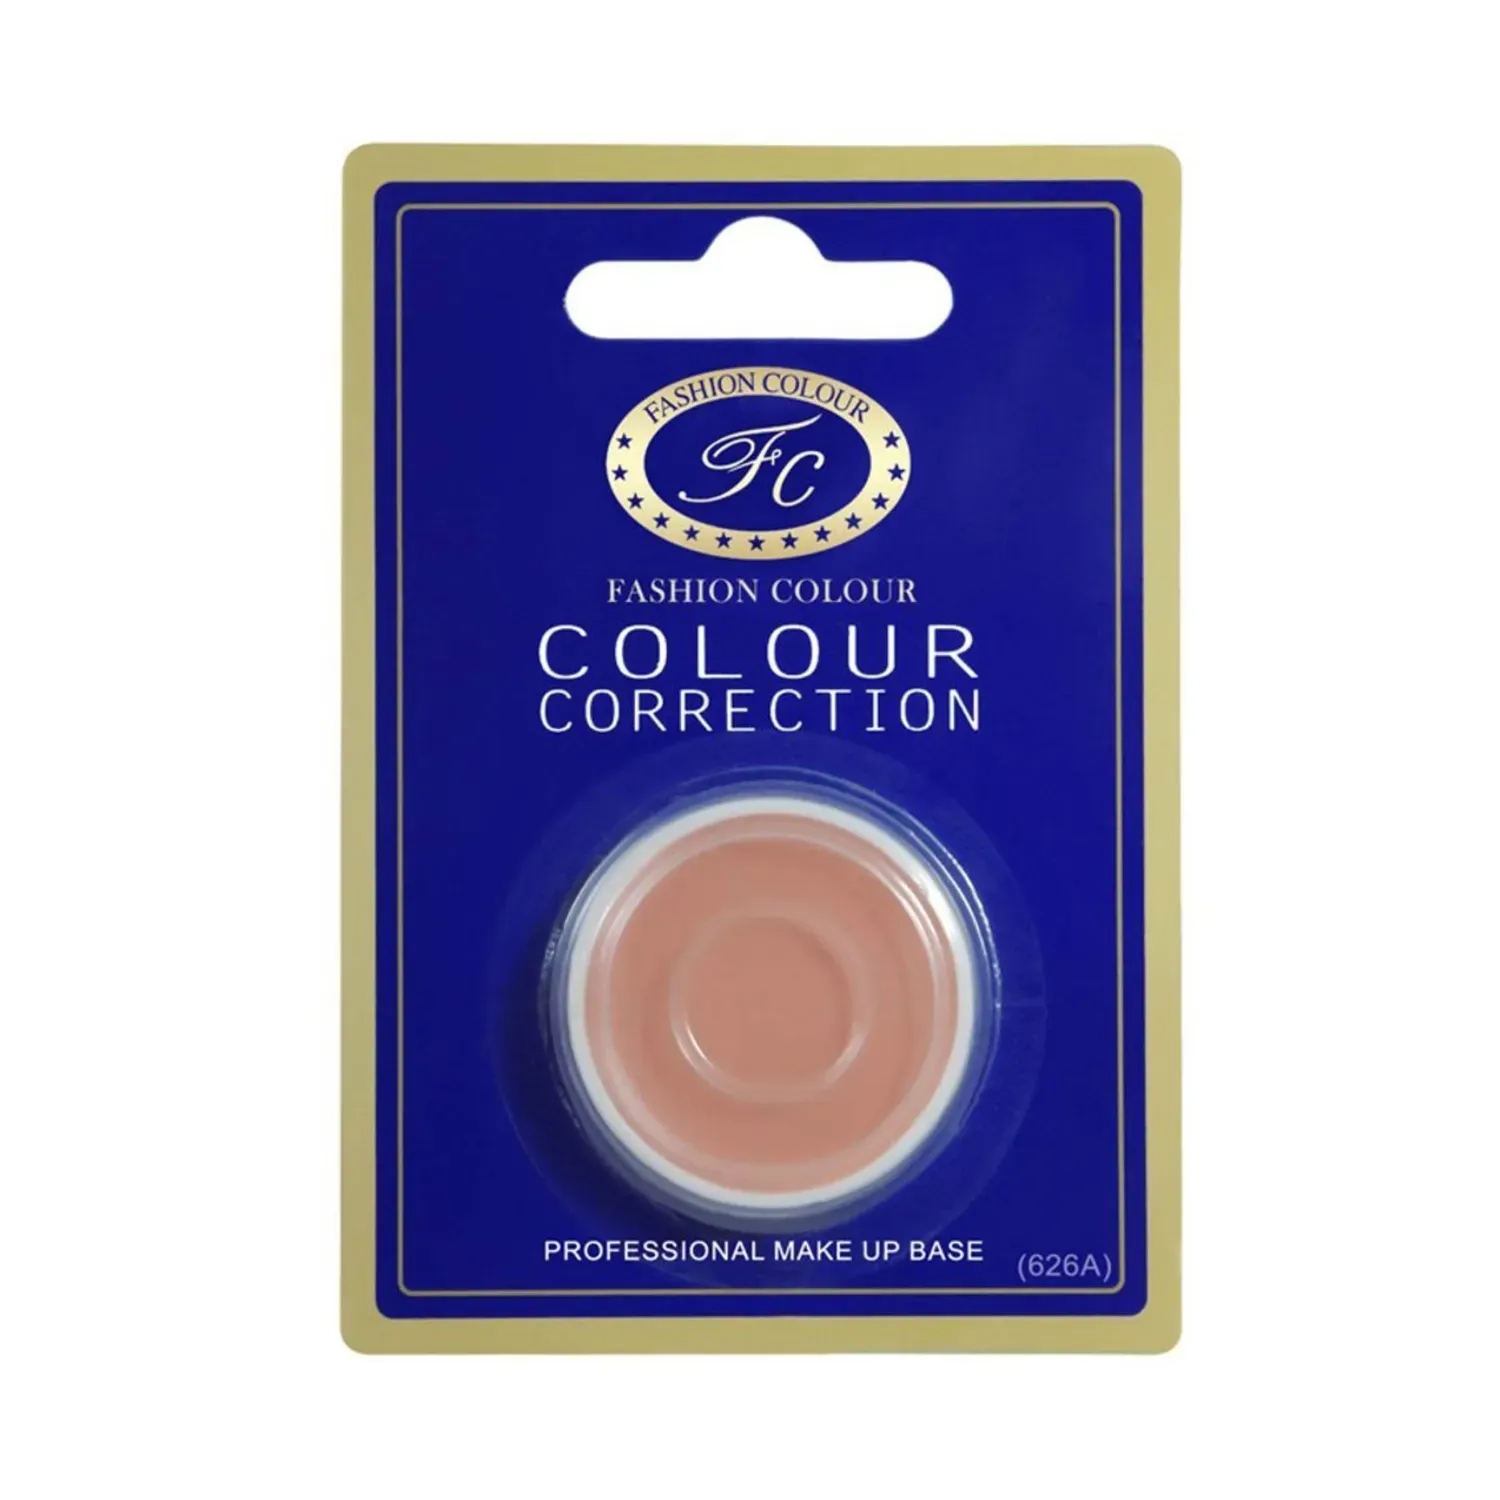 Fashion Colour | Fashion Colour Single Packing Colour Correction Makeup Base Concealer - 626A (3.5g)